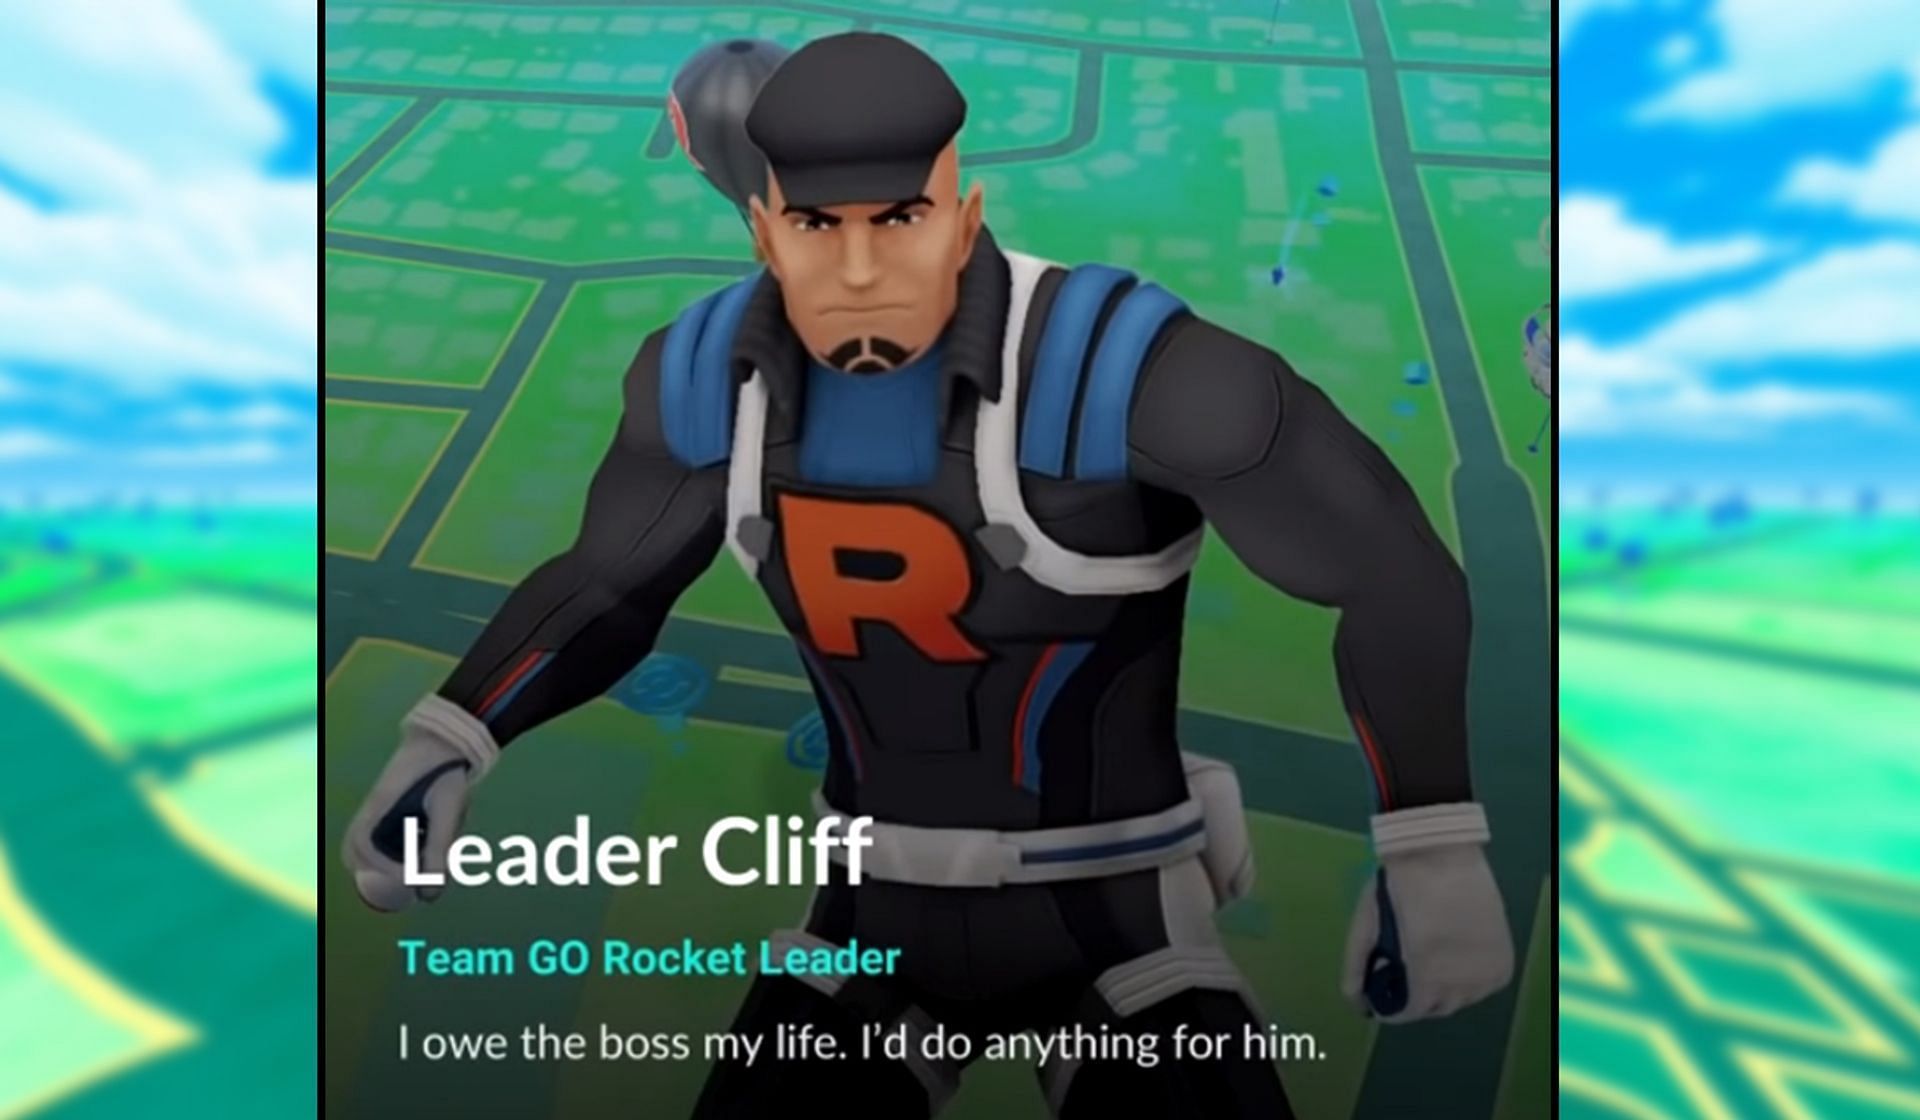 Leader cliff pokemon go september 2022